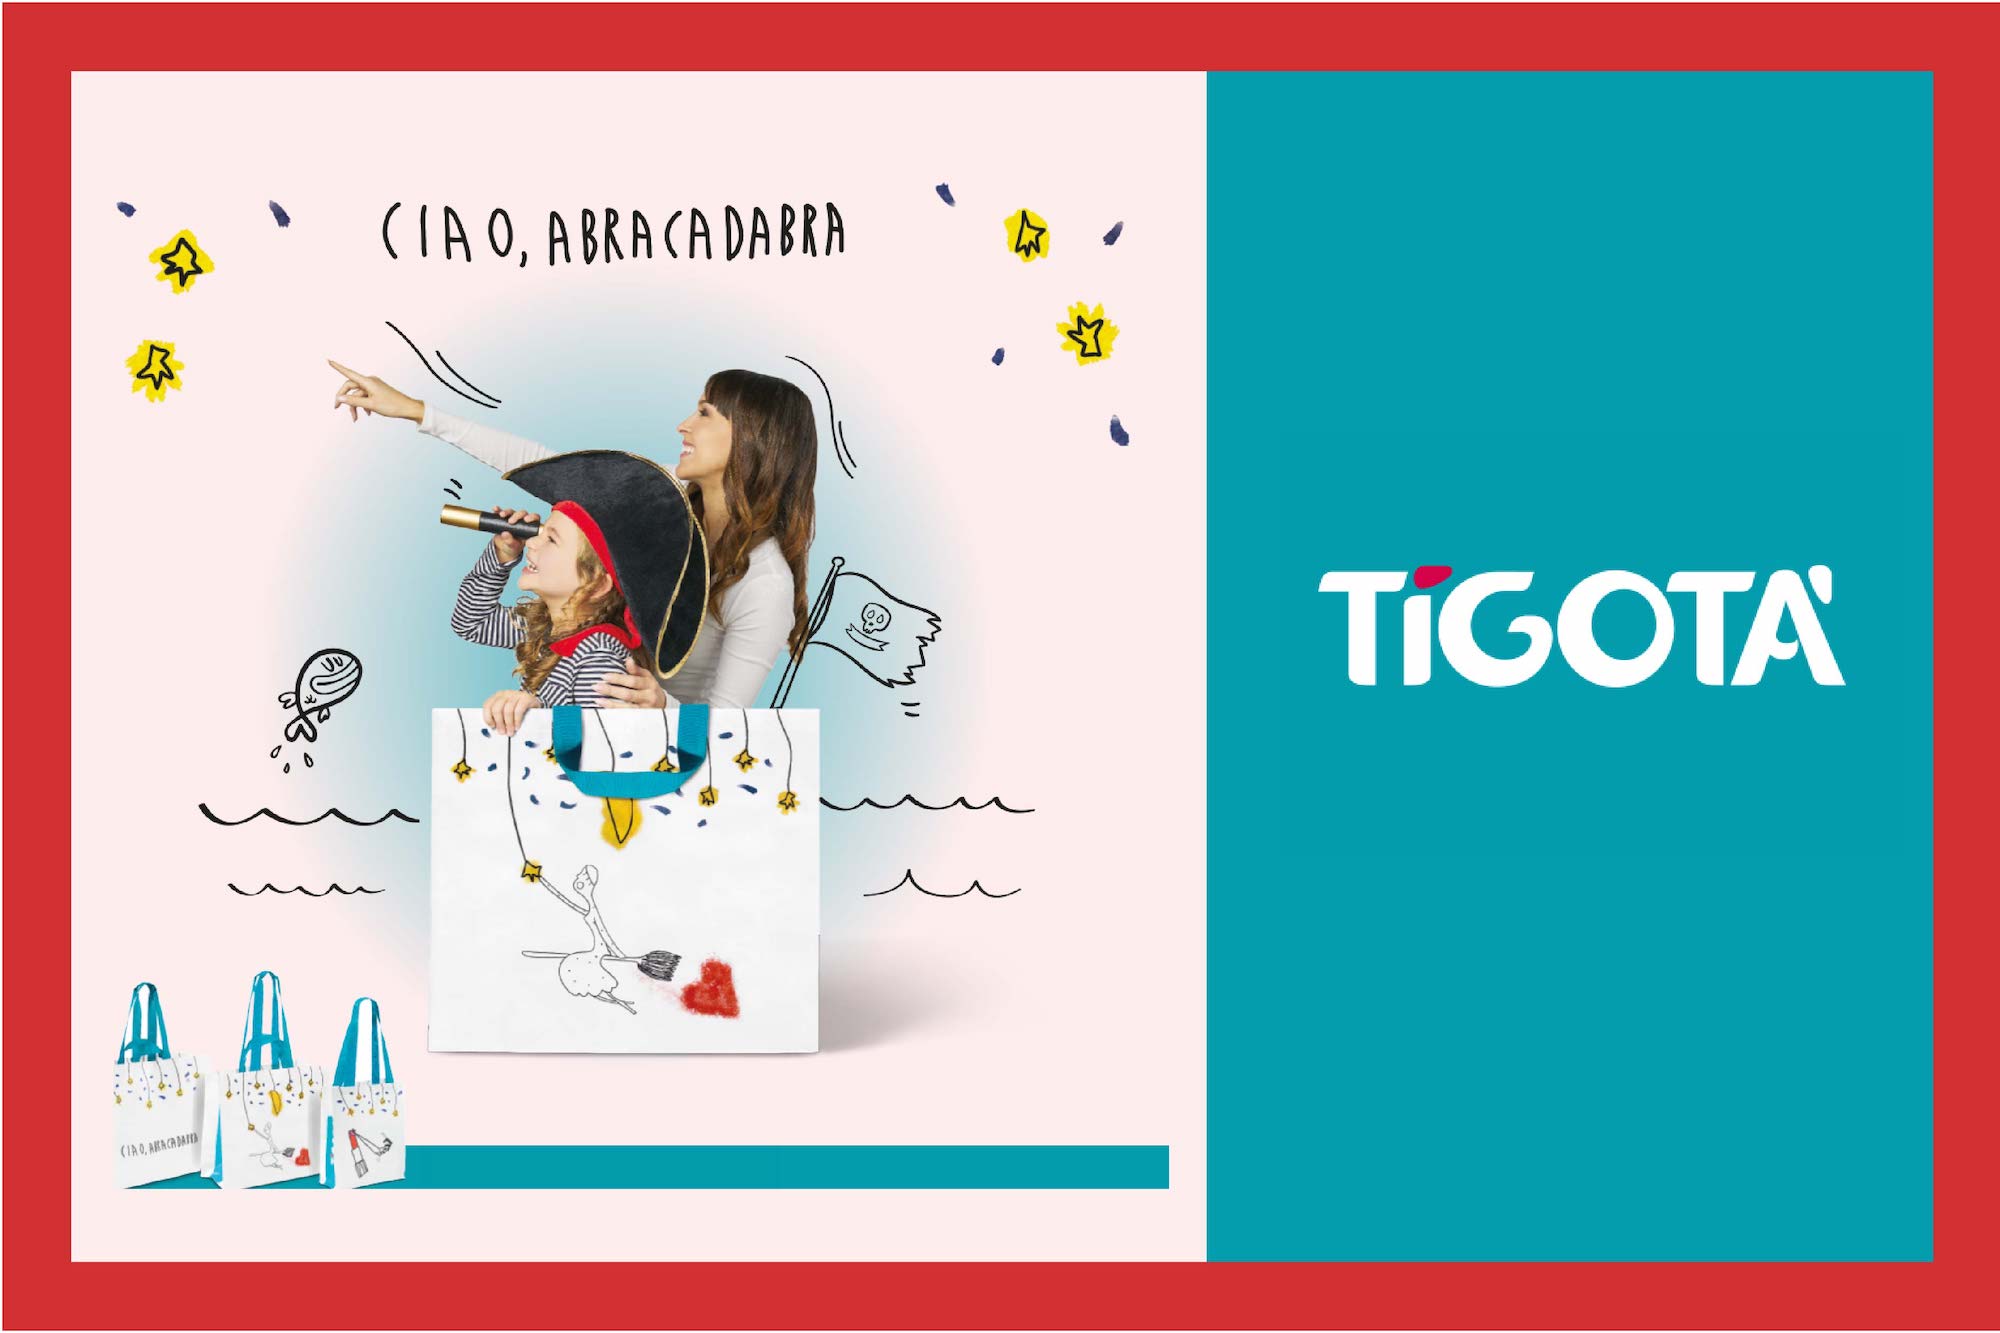 Da Tigotà è arrivata la magia! Vieni a scoprire la nuova collezione merchandising “Ciao, abracadabra” 2023! ⭐⭐⭐